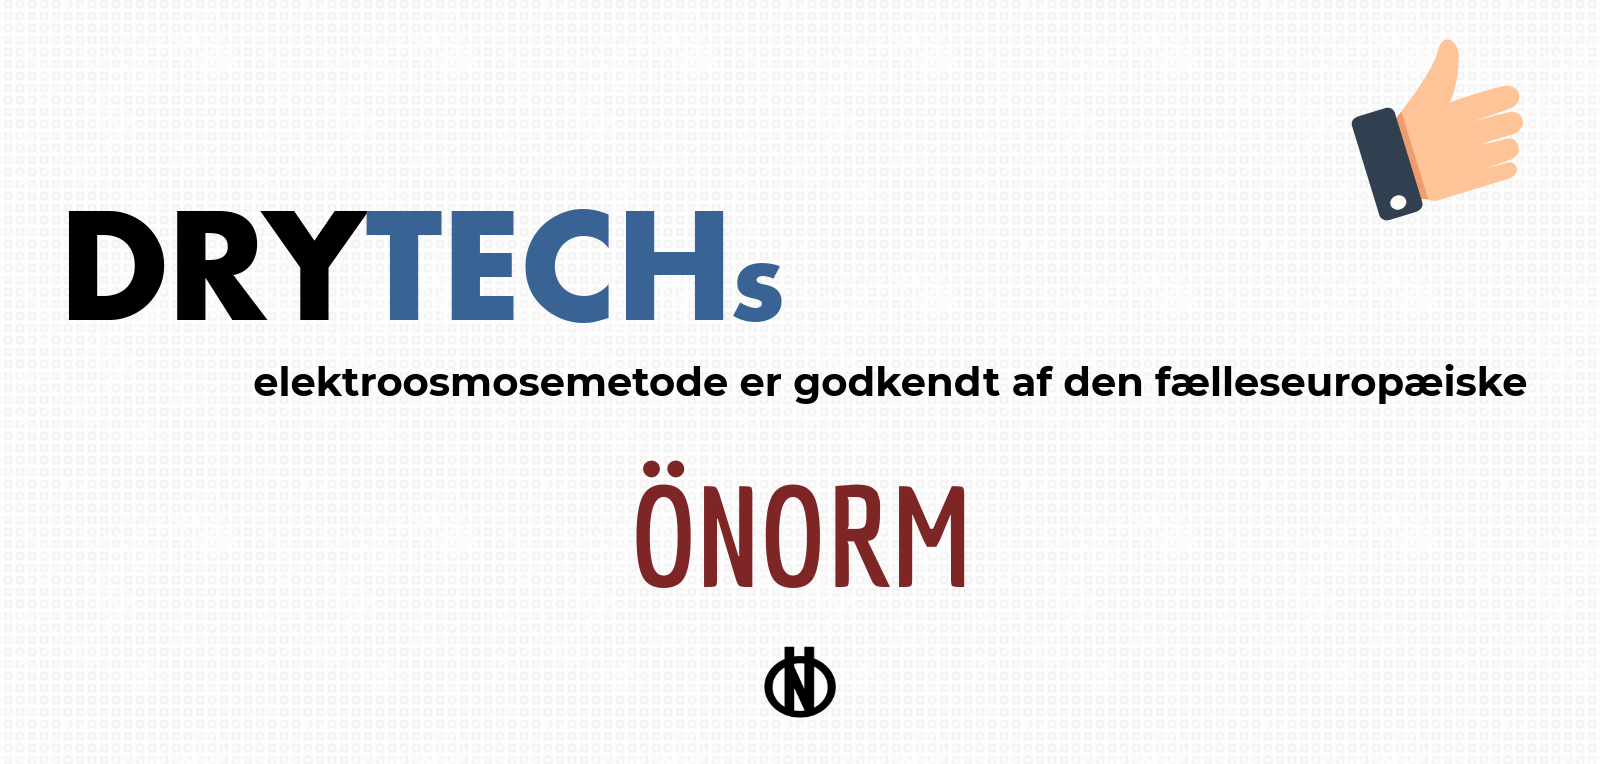 Drytechs elektroosmose er godkendt af ÖNORM, som er en standard indenfor EU, der tildeles af Austrian Standards Institute.